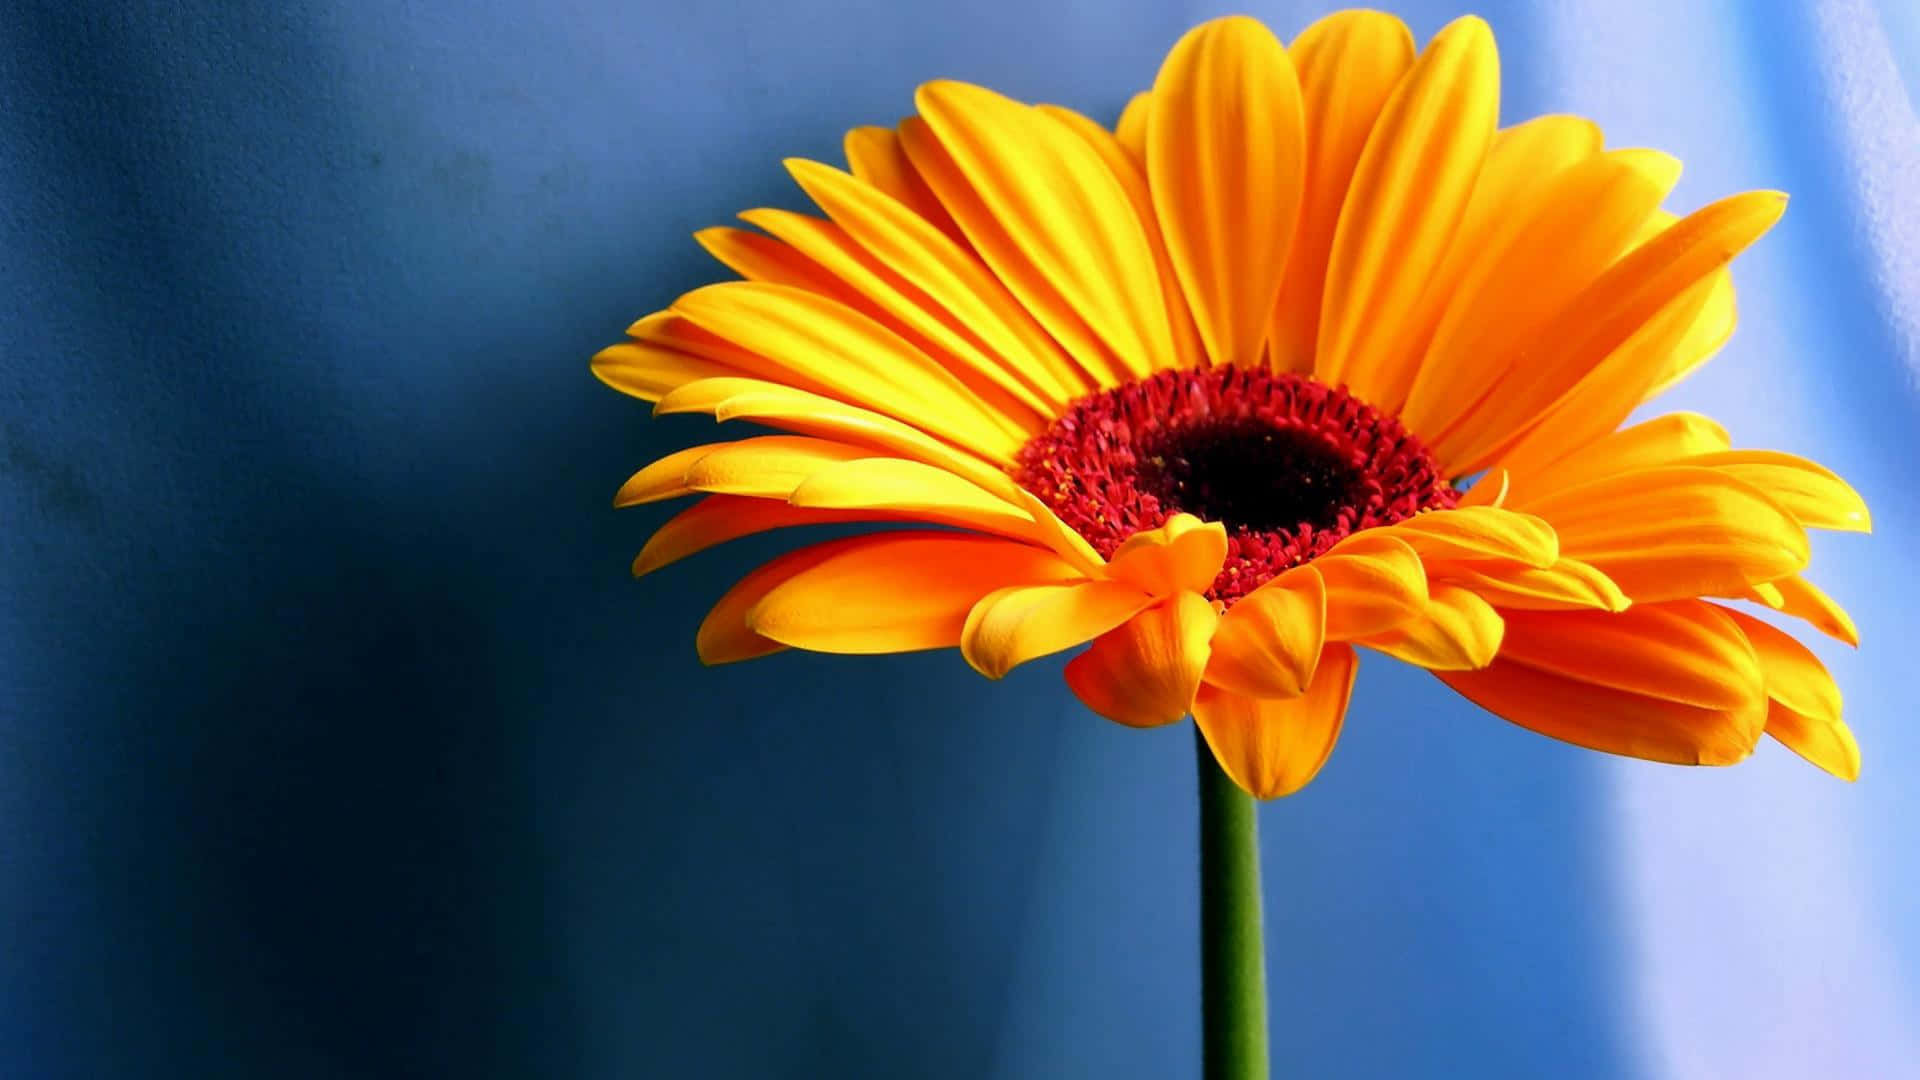 Enjoy the Sun with a Cute Sunflower Wallpaper